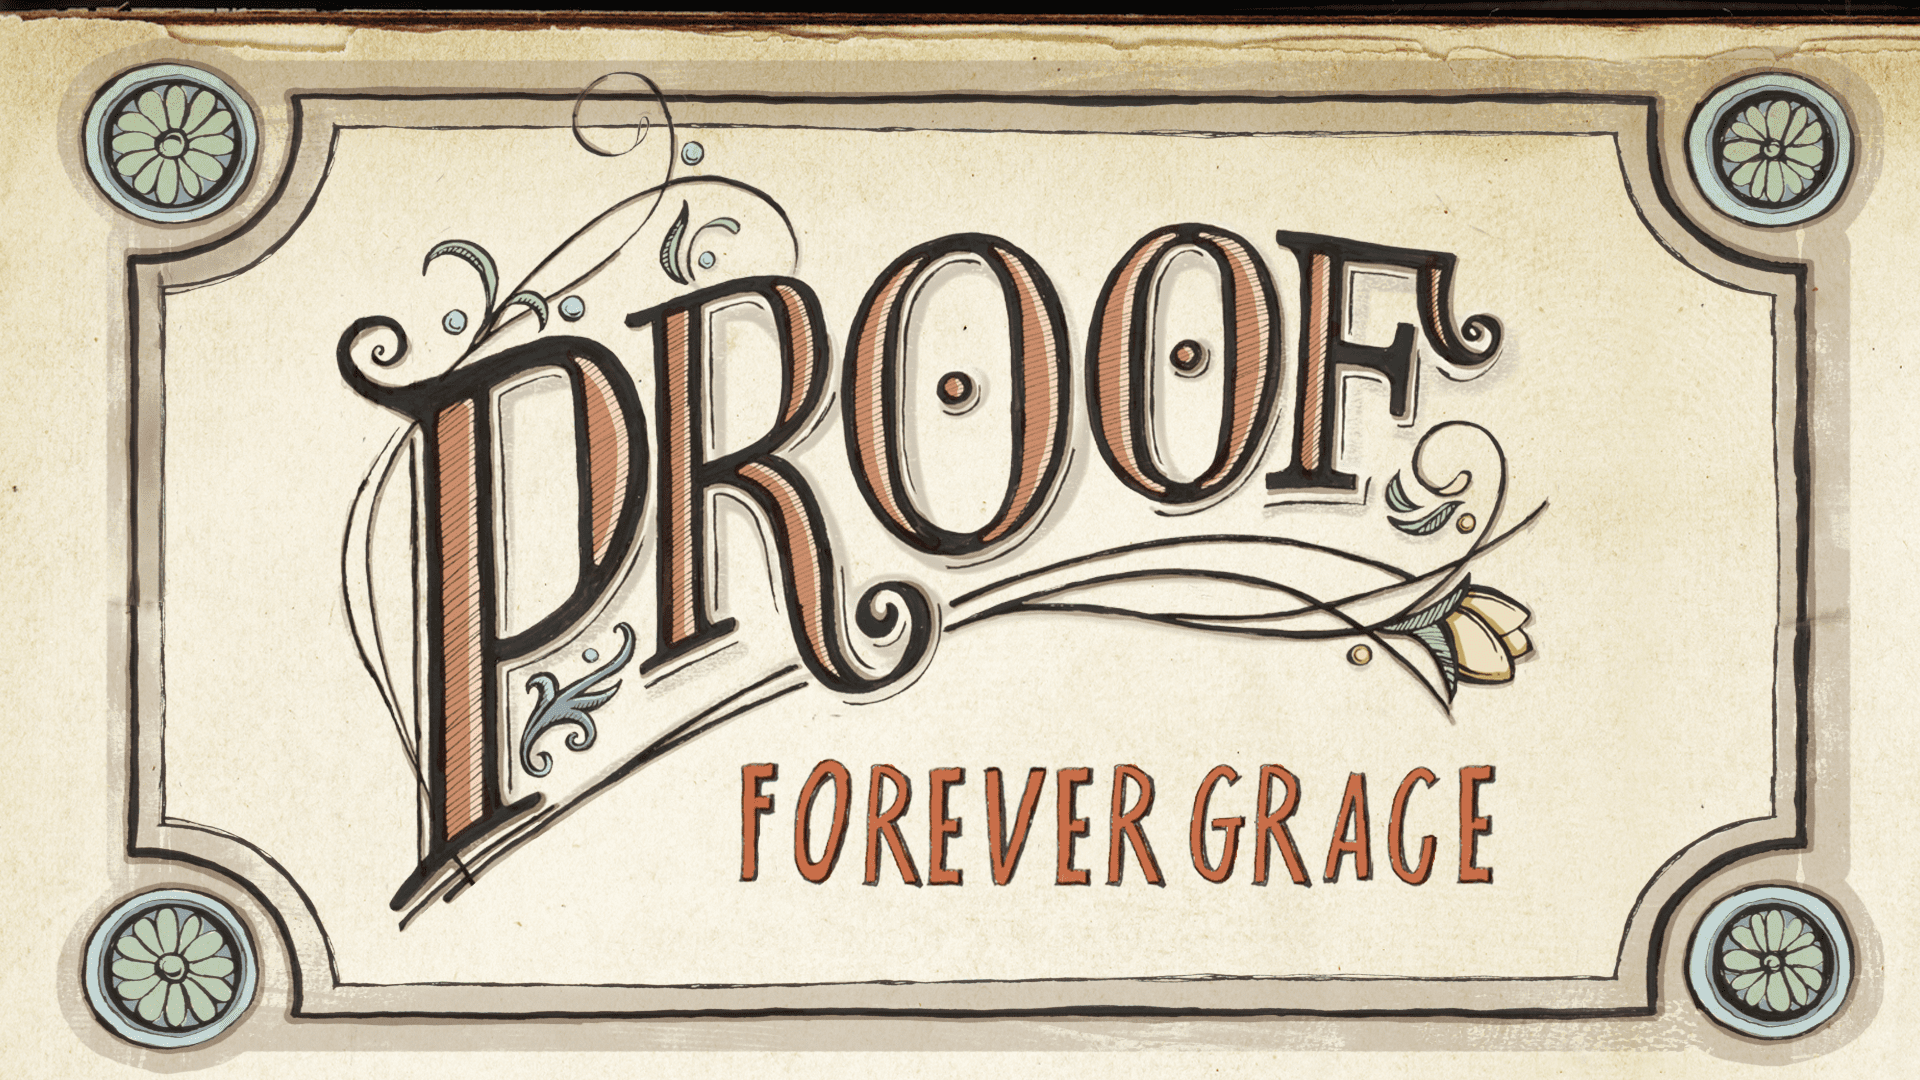 Forever Grace